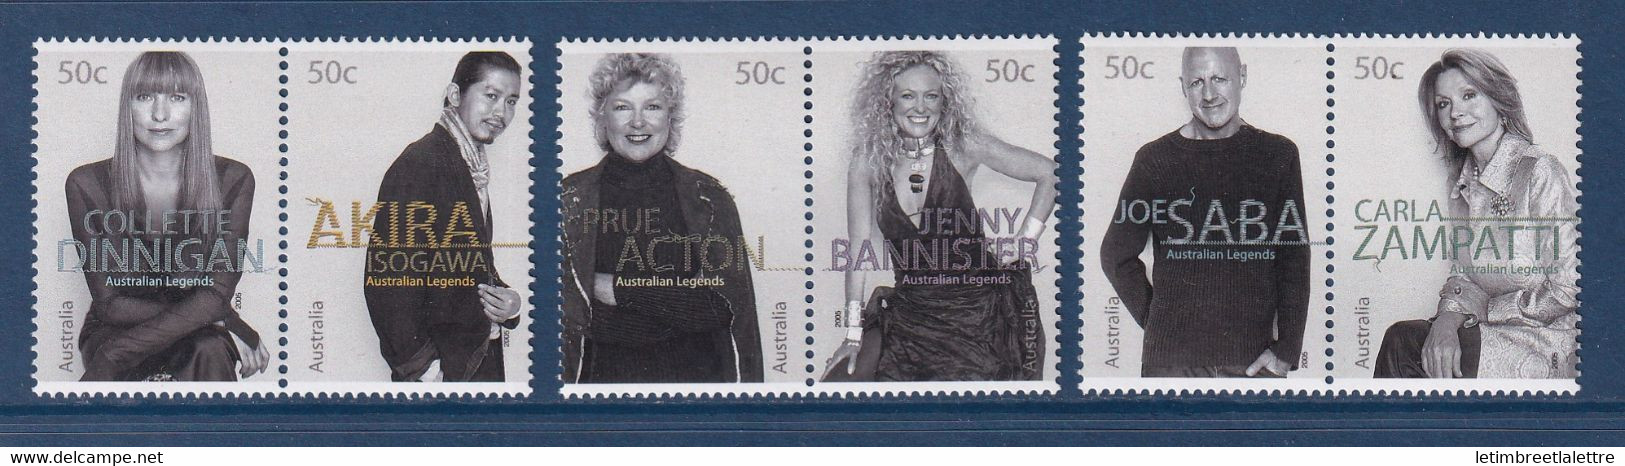 ⭐ Australie - YT N° 2285 à 2290 ** - Neuf Sans Charnière - 2005 ⭐ - Mint Stamps